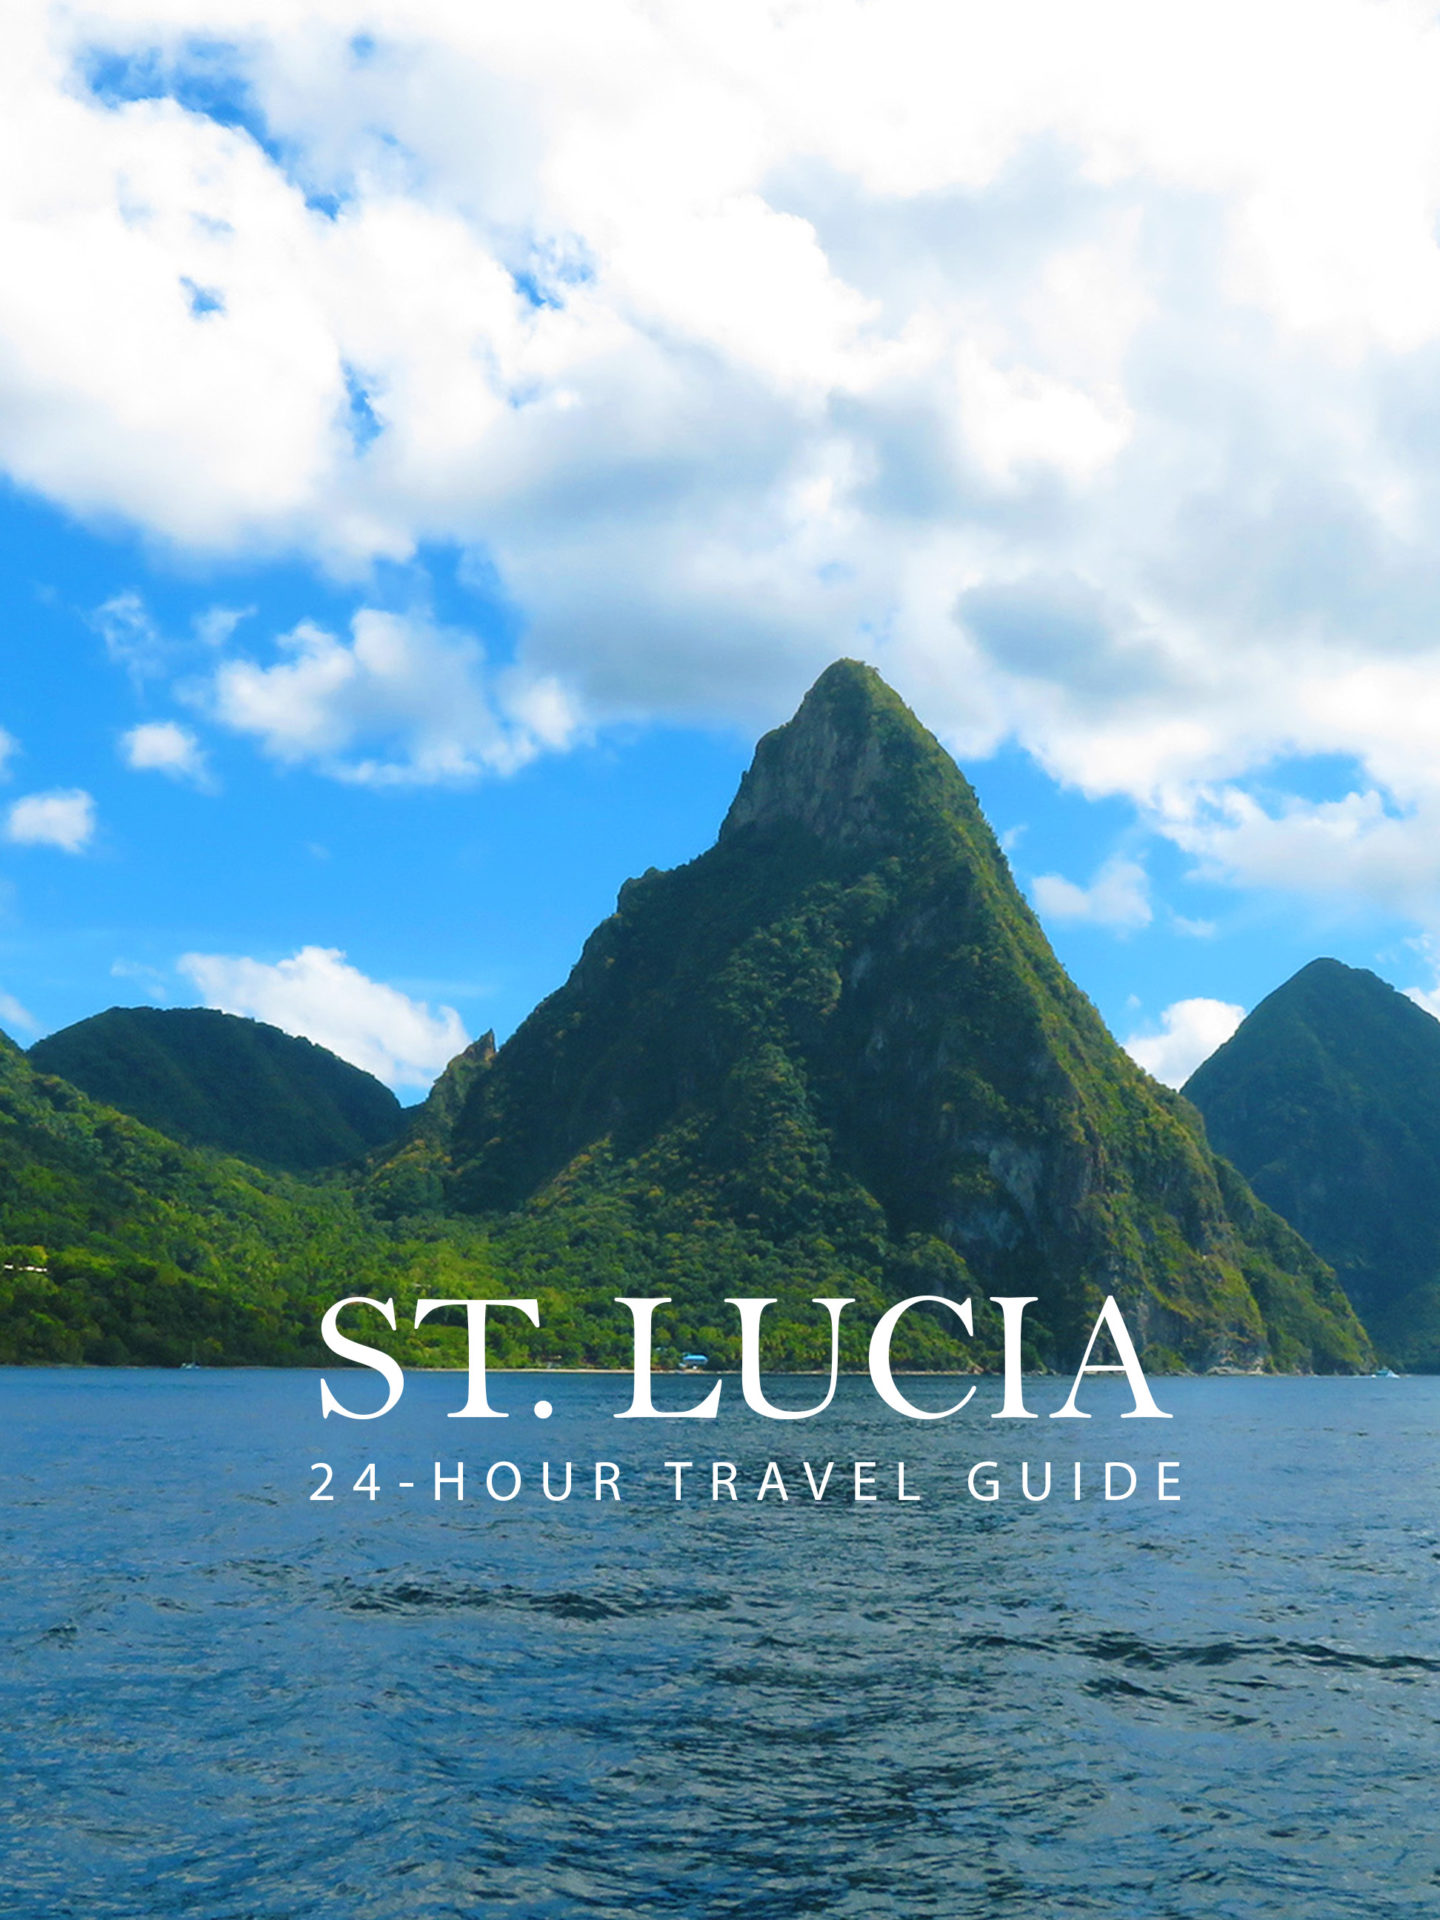 Karibik Kreuzfahrt Reisebericht St. Lucia Pinterest